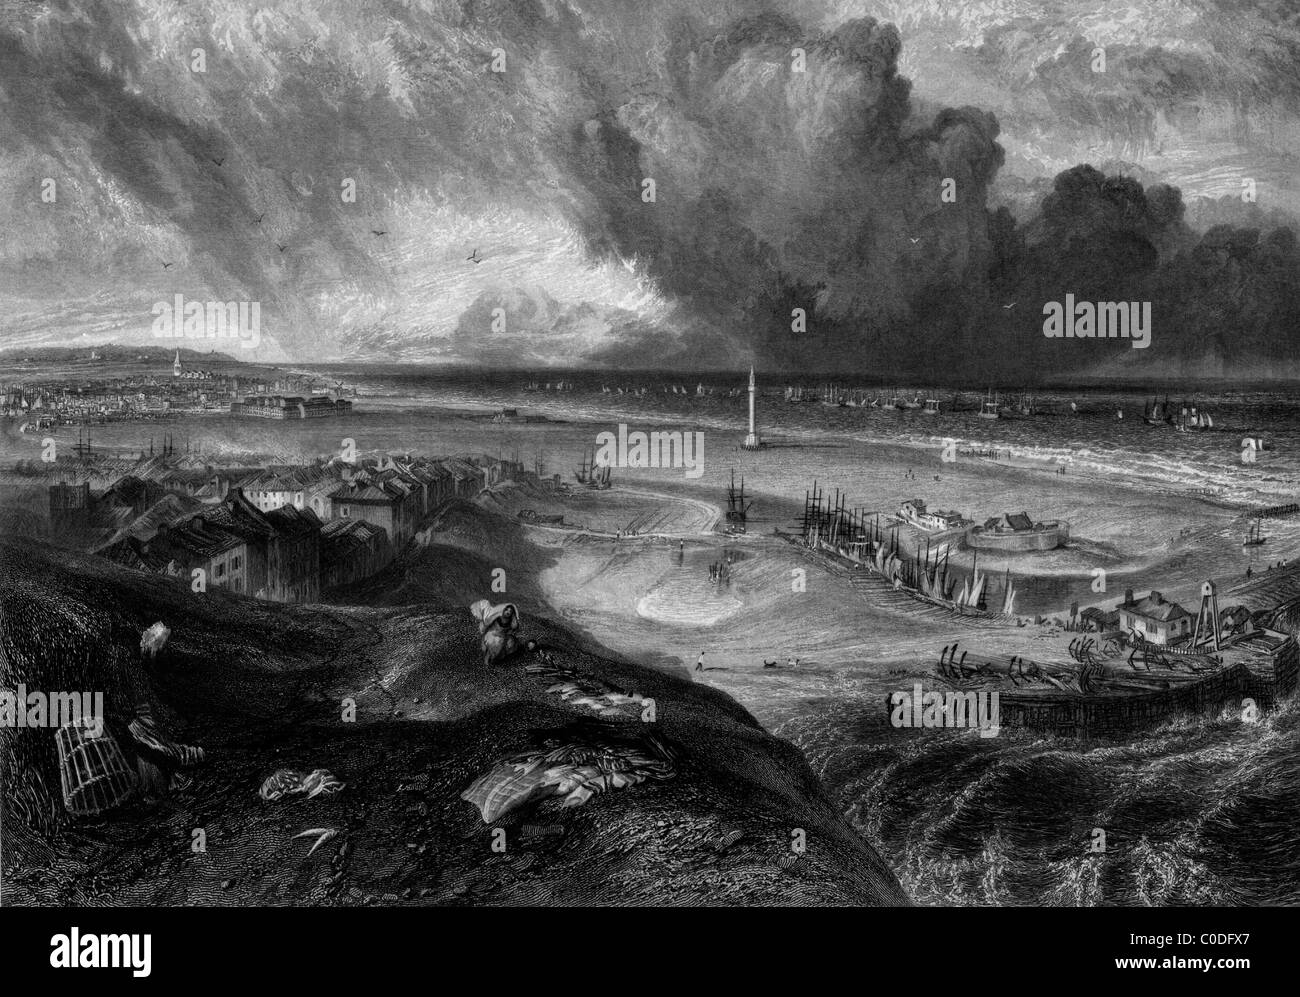 La plage et le port de Great Yarmouth, Norfolk, Angleterre. Gravée par William Miller en 1838, domaine public de droit en vertu de l'âge. Banque D'Images